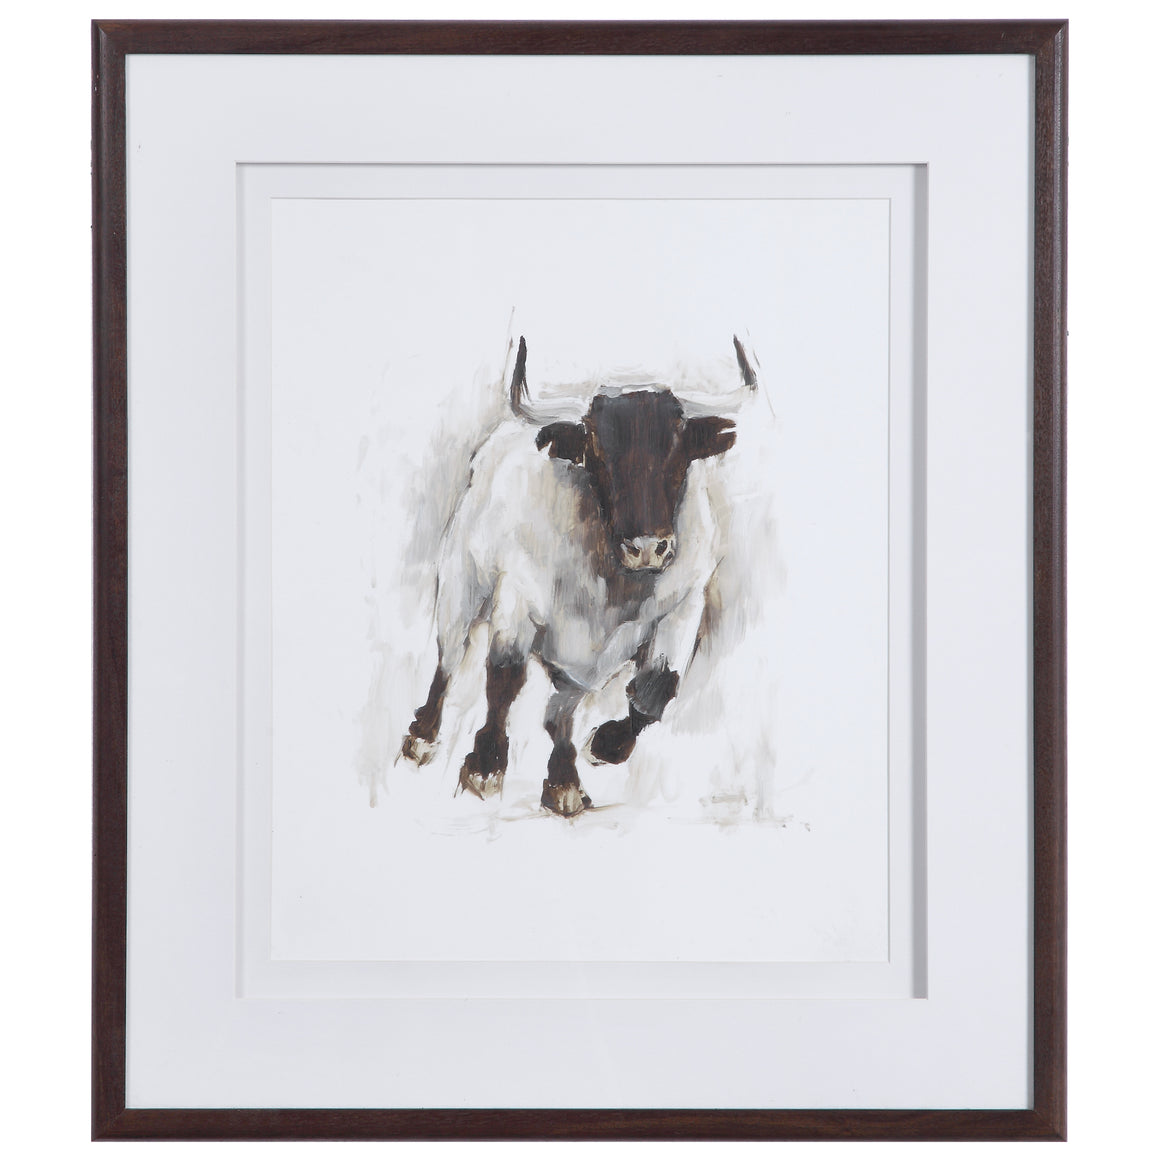 Rustic Bull Framed Animal Print